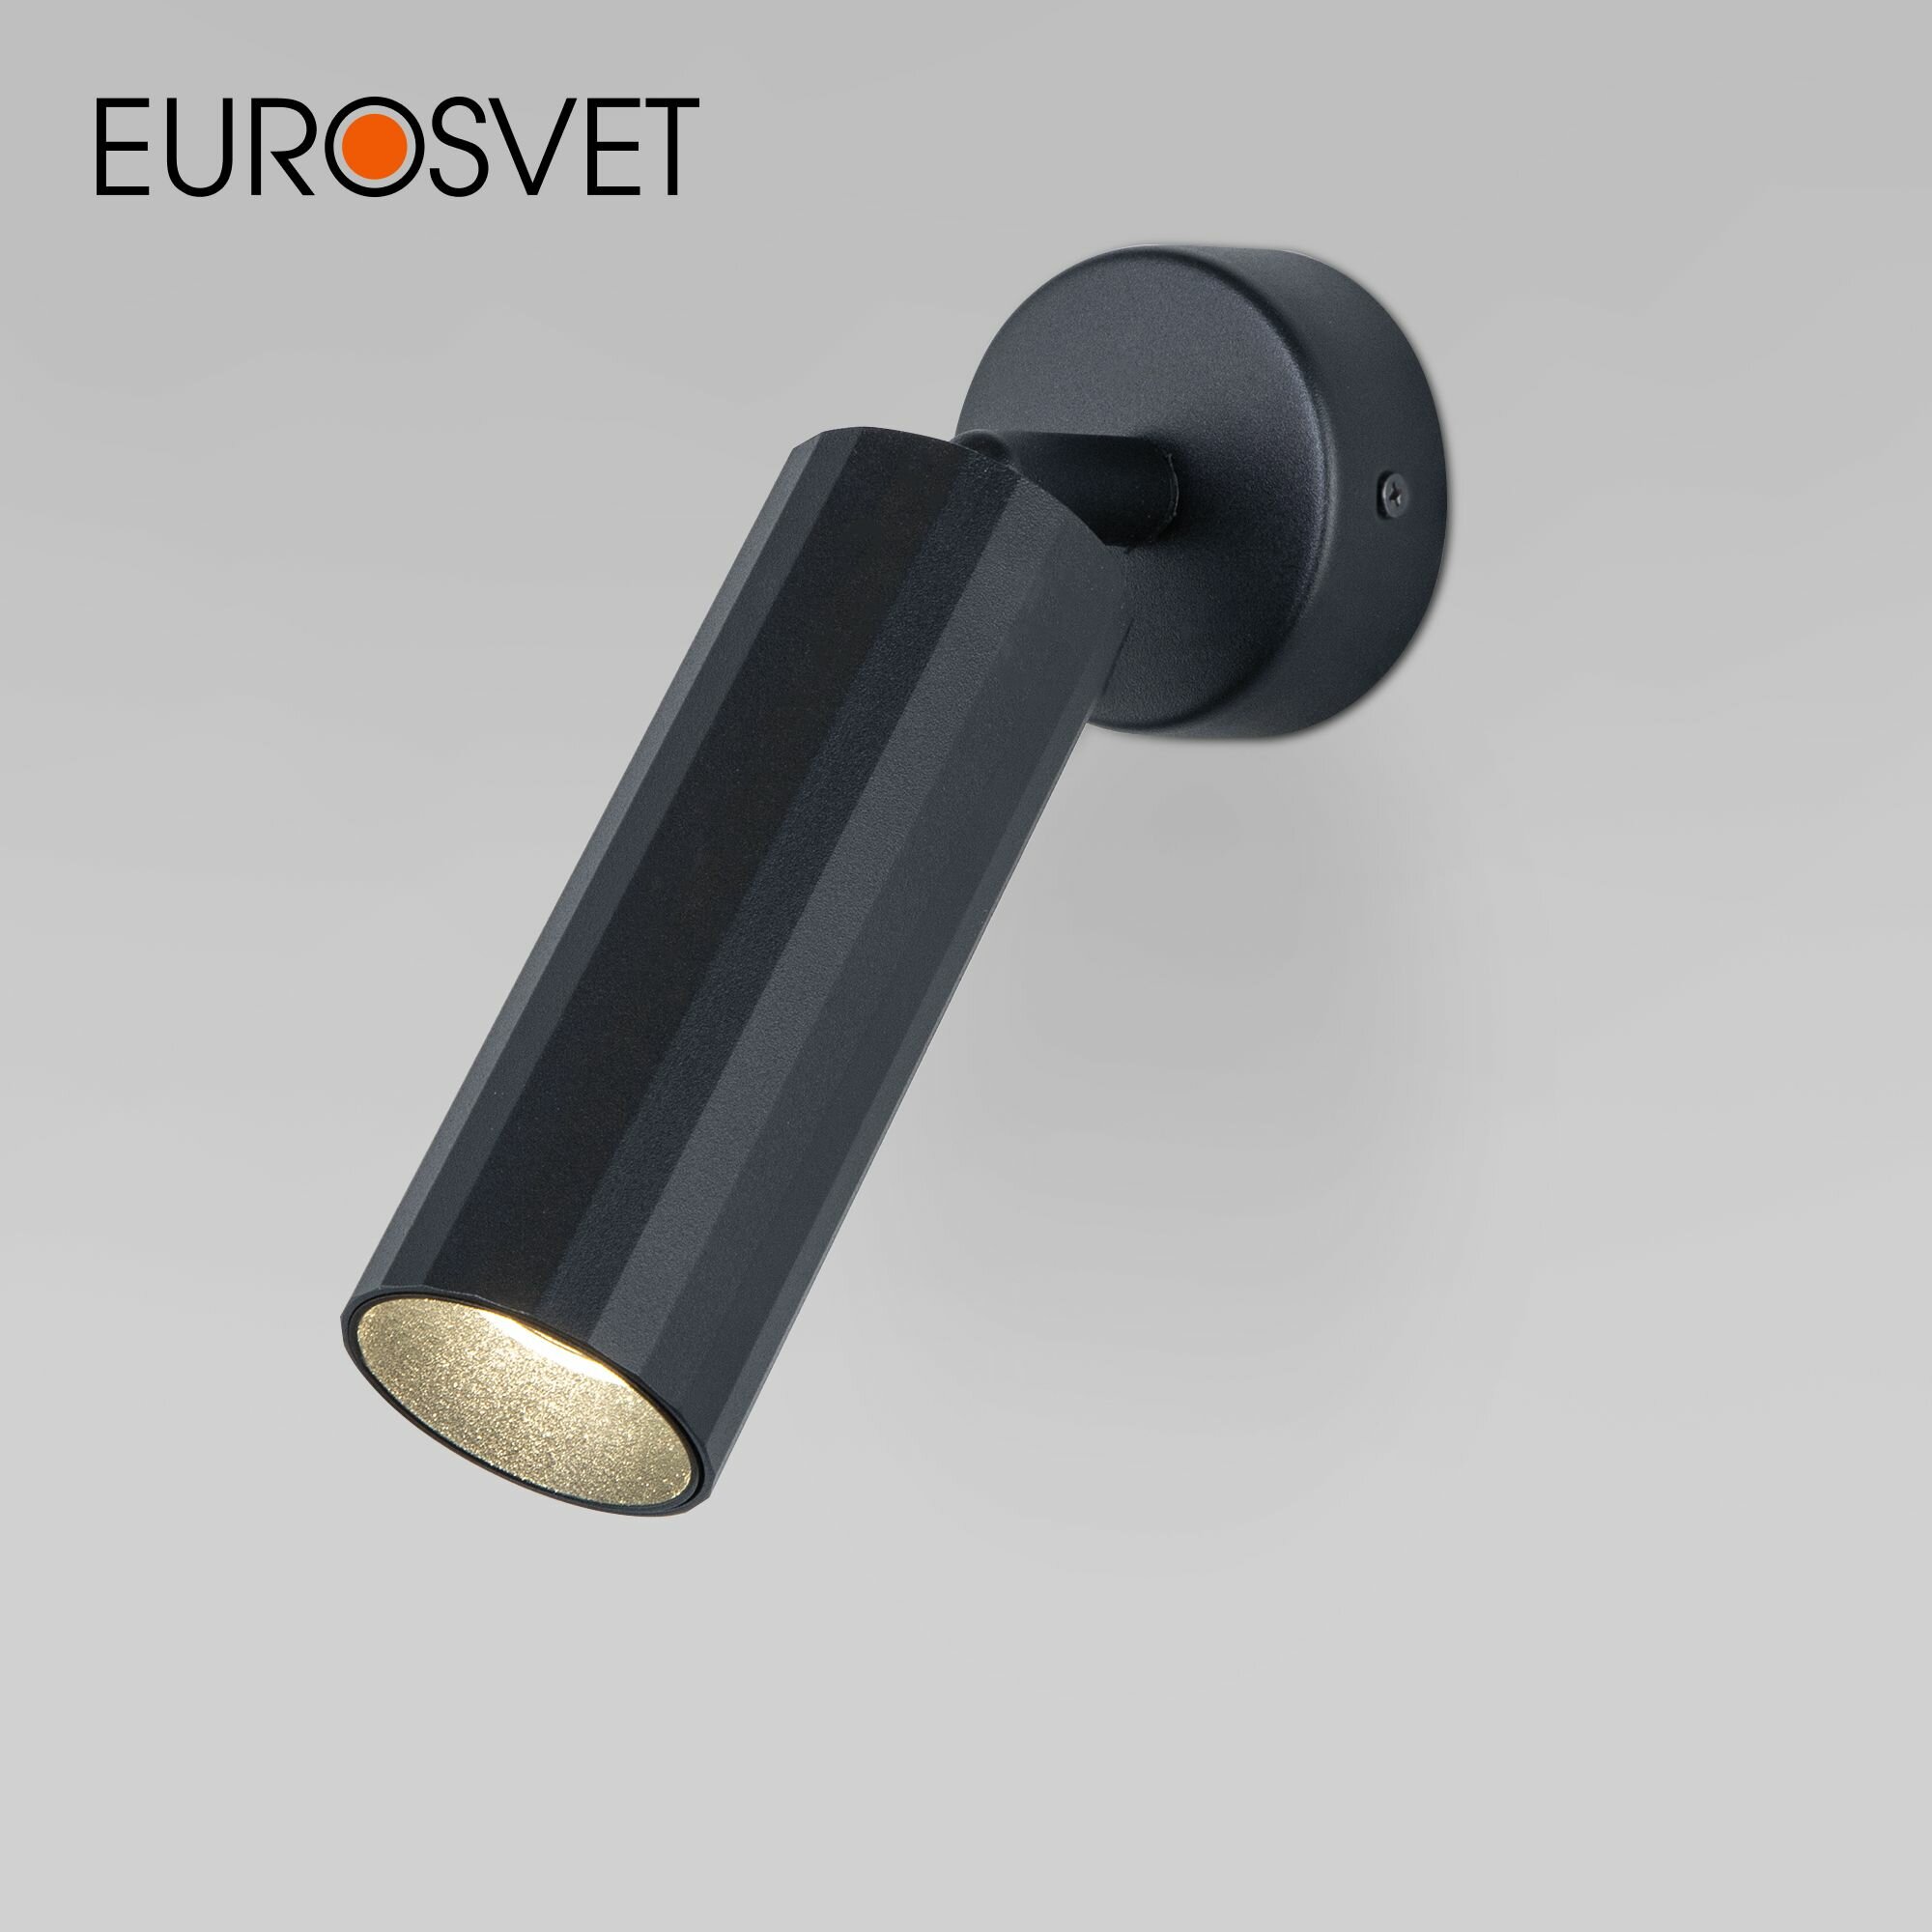 Спот / Настенный светодиодный светильник с поворотным плафоном Eurosvet Arris 20098/1 LED, цвет черный